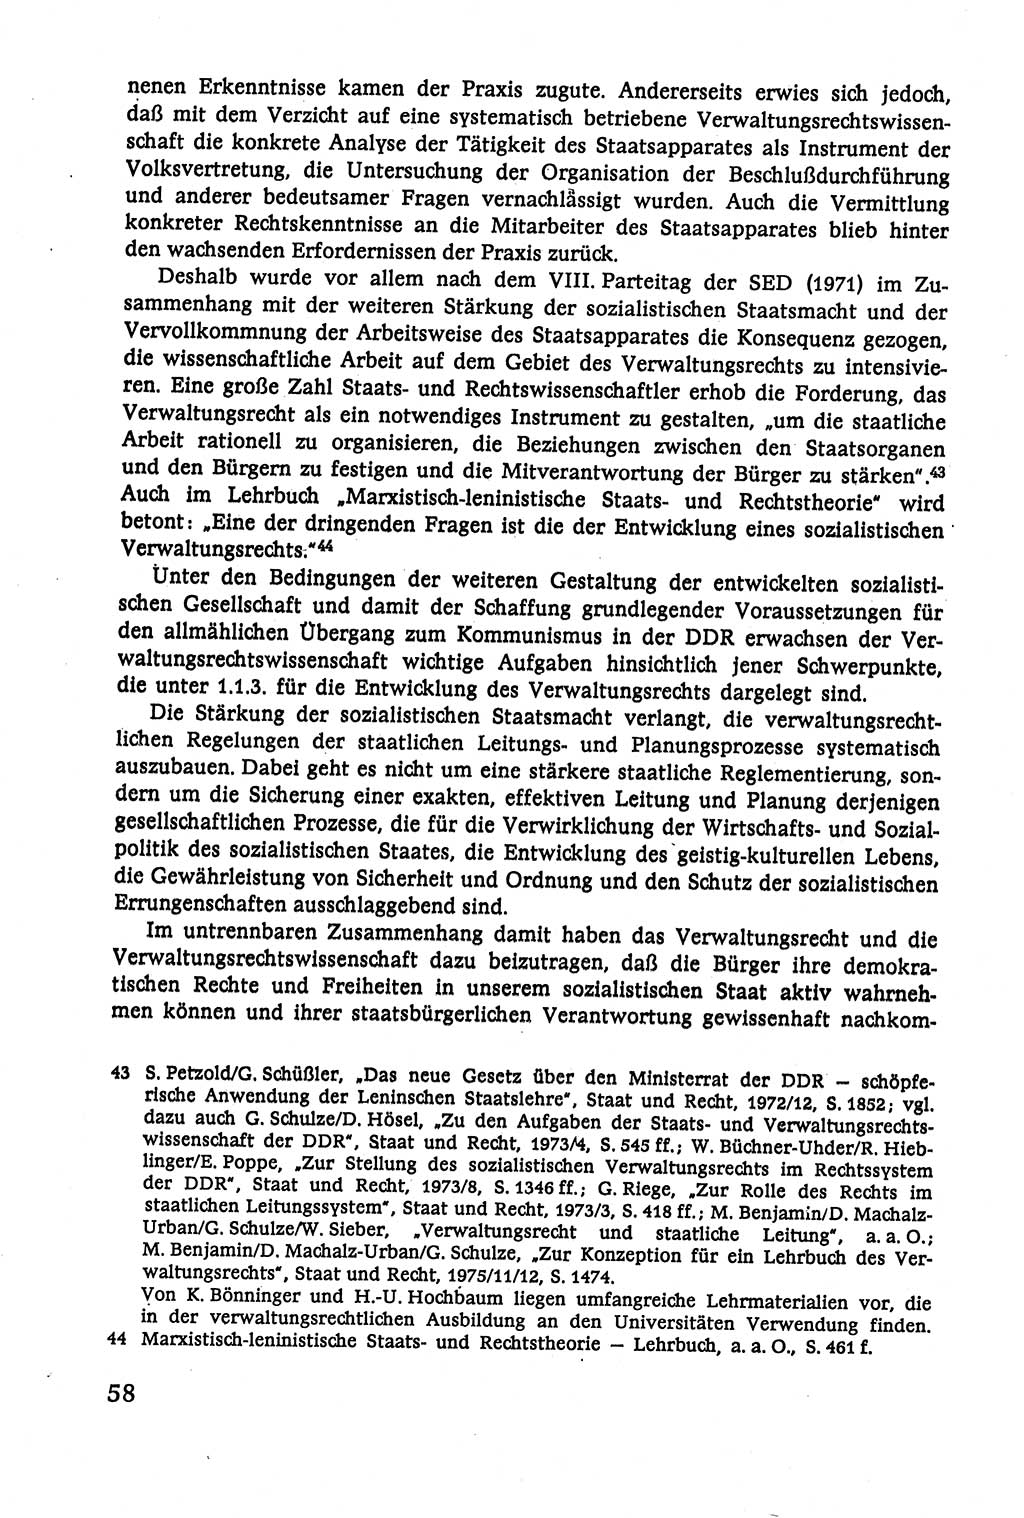 Verwaltungsrecht [Deutsche Demokratische Republik (DDR)], Lehrbuch 1979, Seite 58 (Verw.-R. DDR Lb. 1979, S. 58)